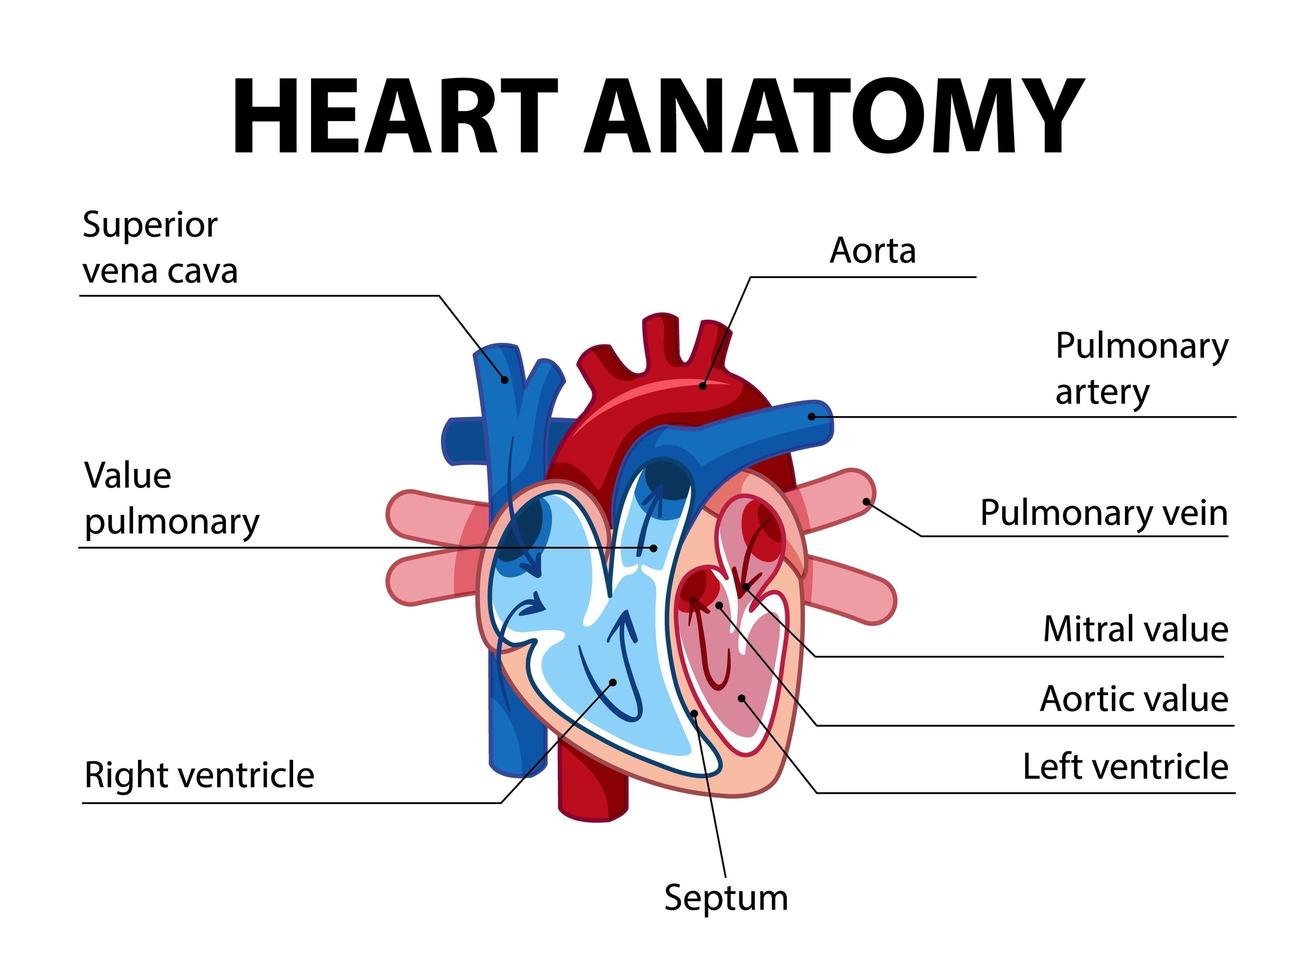 informatie poster van menselijk hart diagram vector